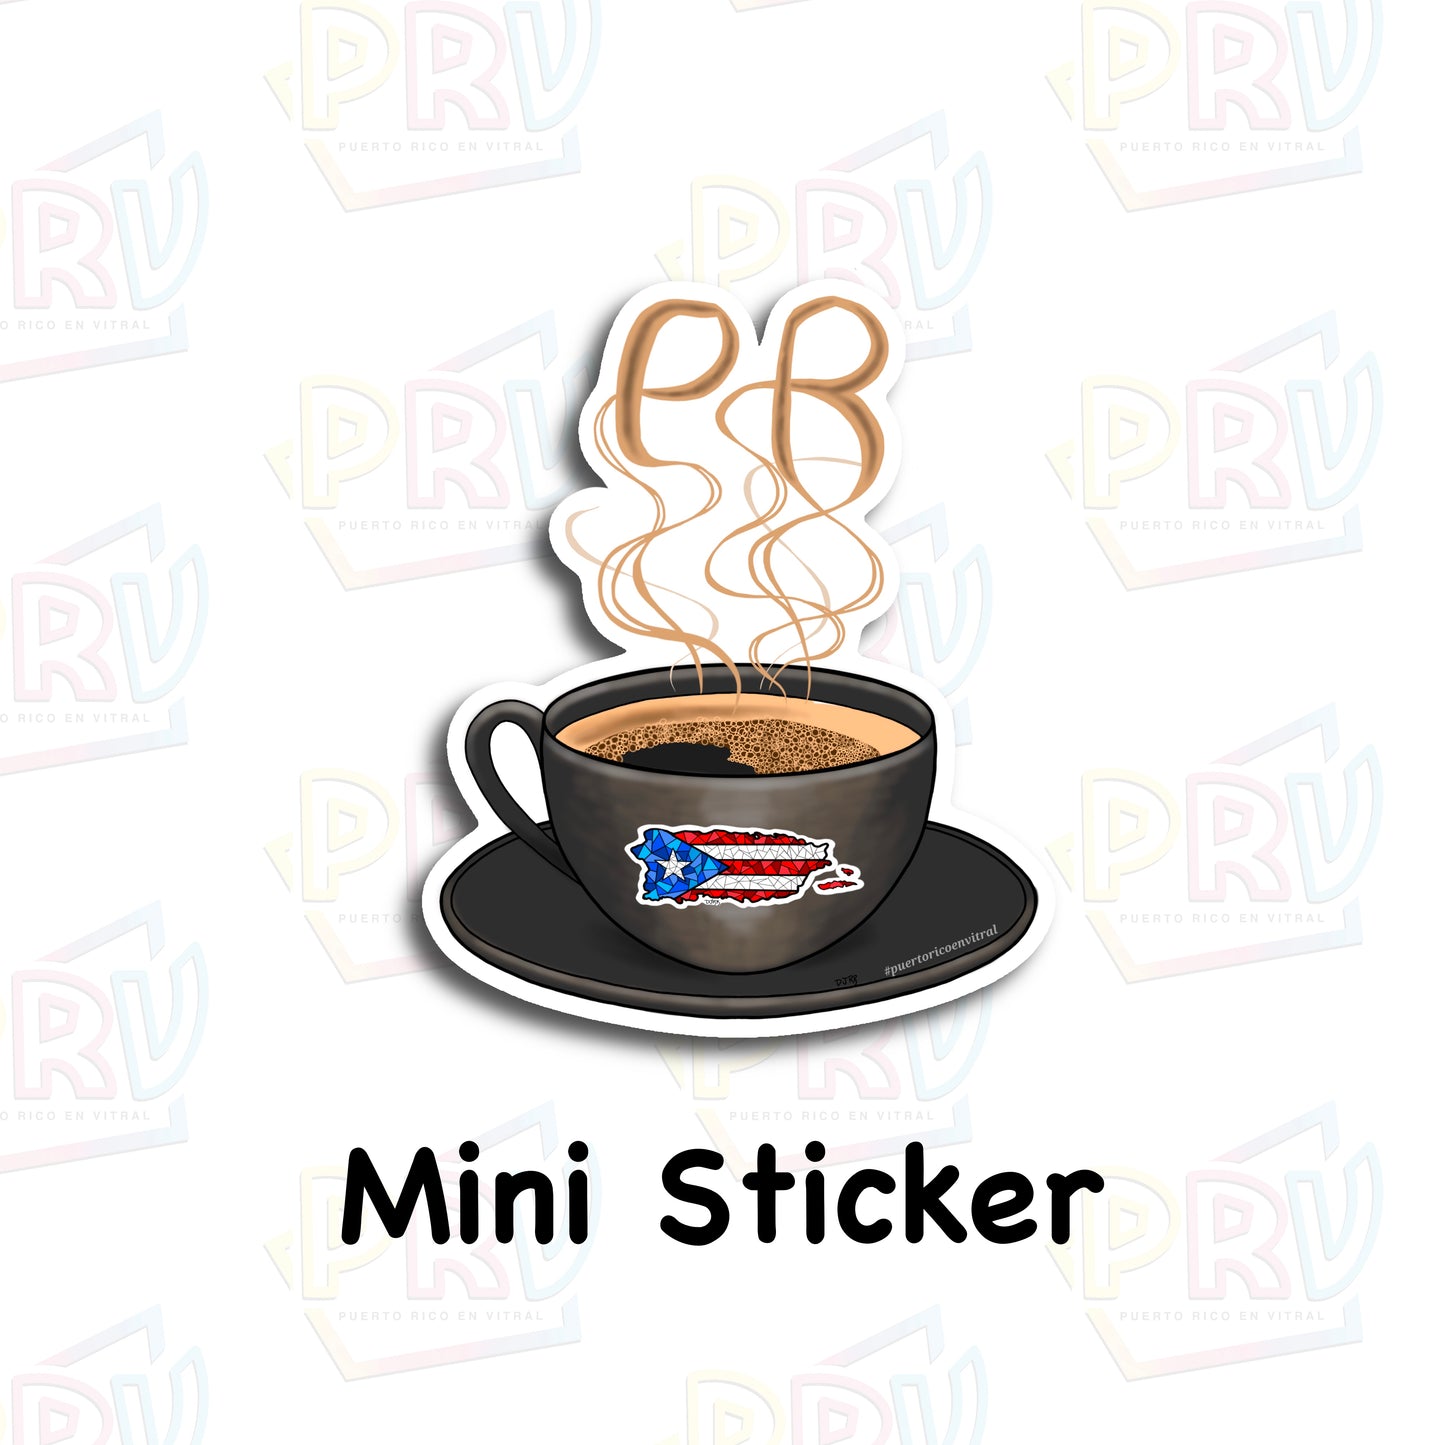 Tradición Puertorriqueña (Mini Sticker)